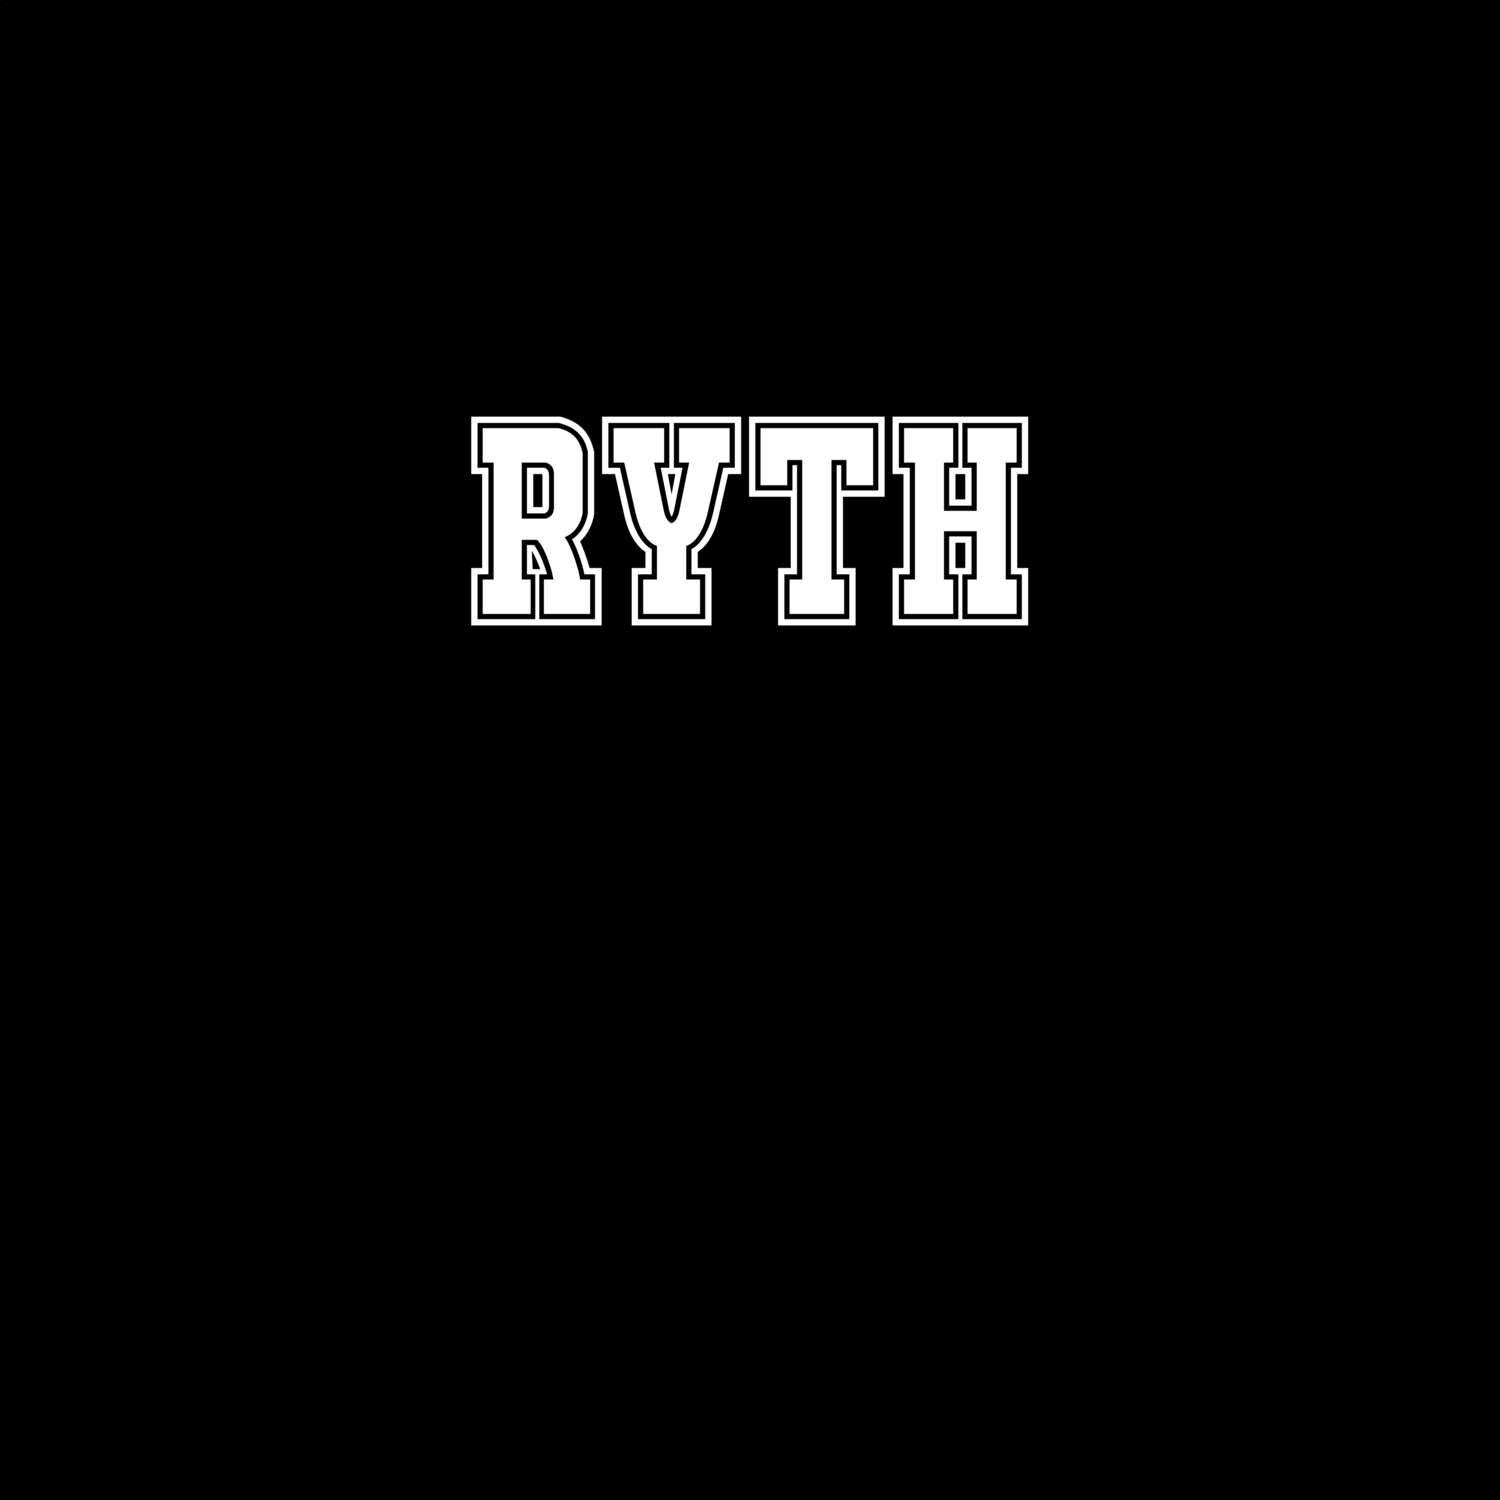 Ryth T-Shirt »Classic«